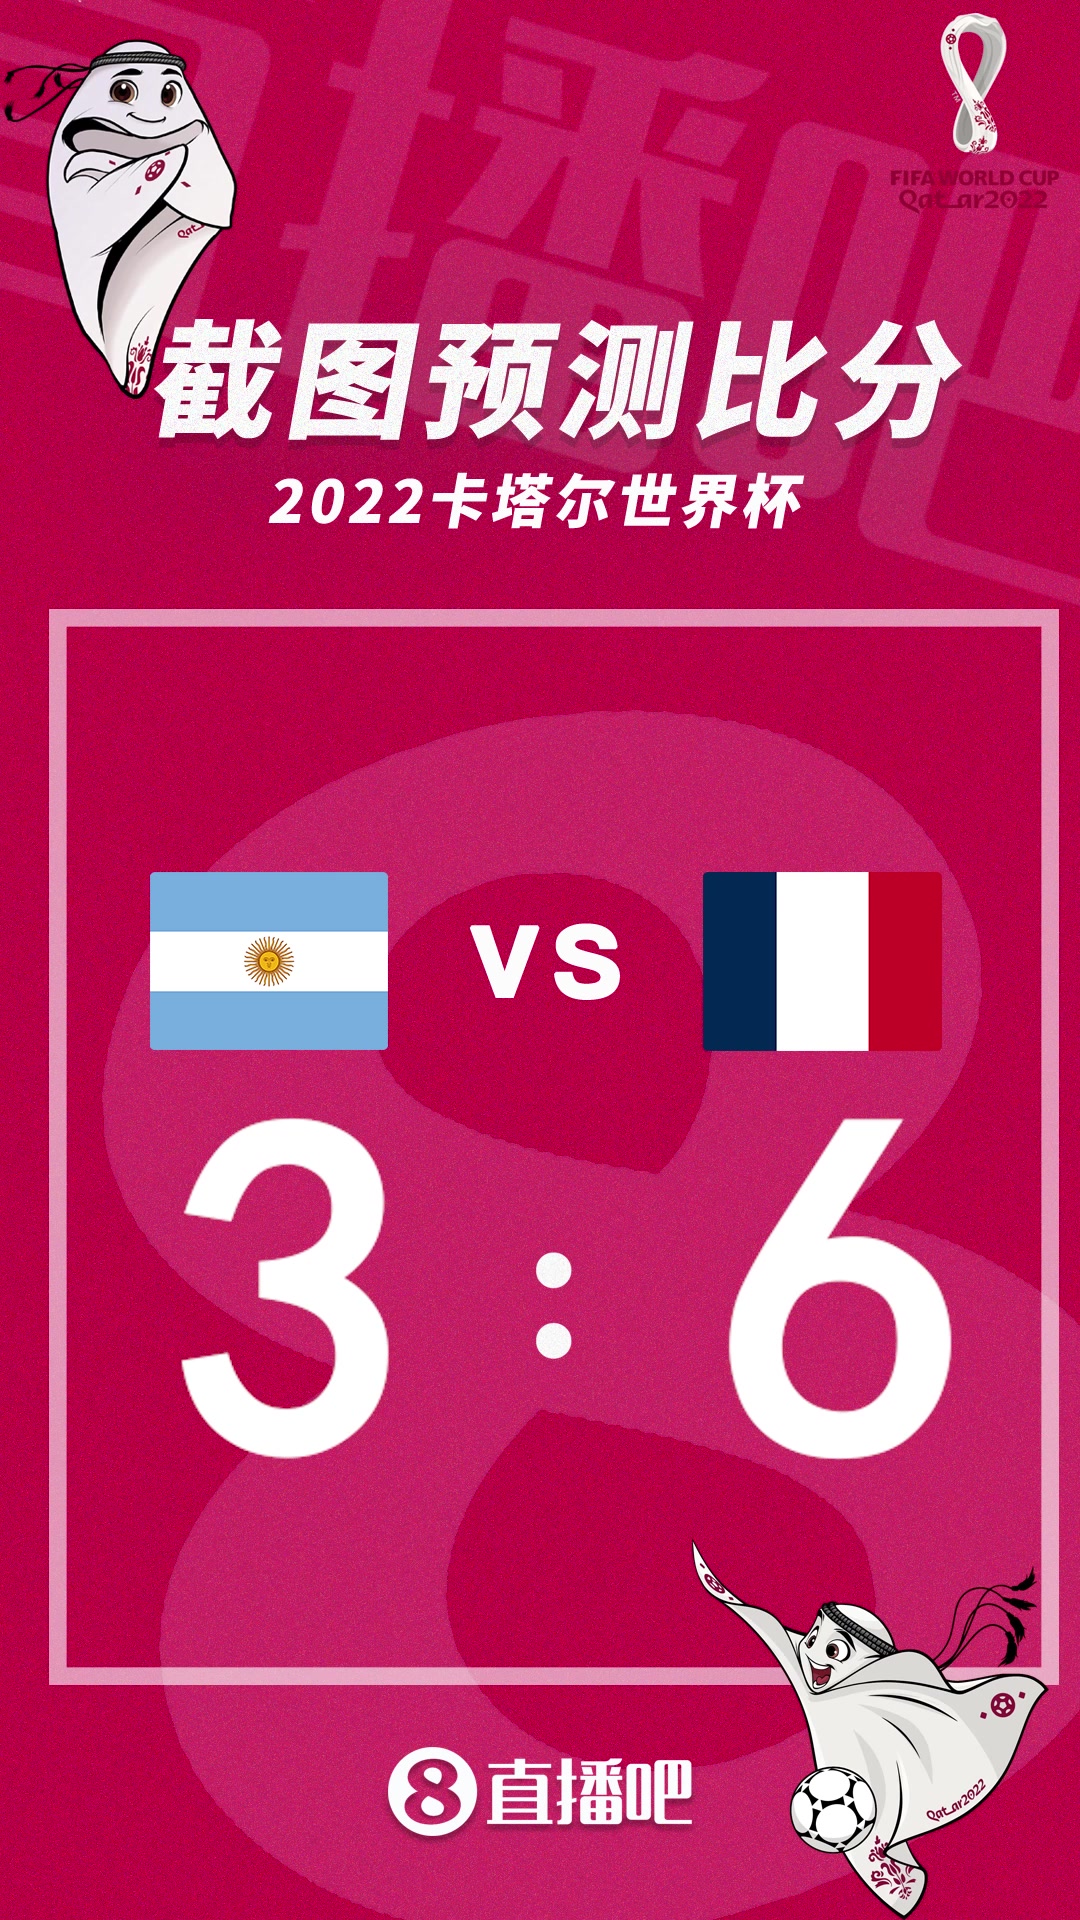 梅西大战姆巴佩！截图预测阿根廷vs法国比分